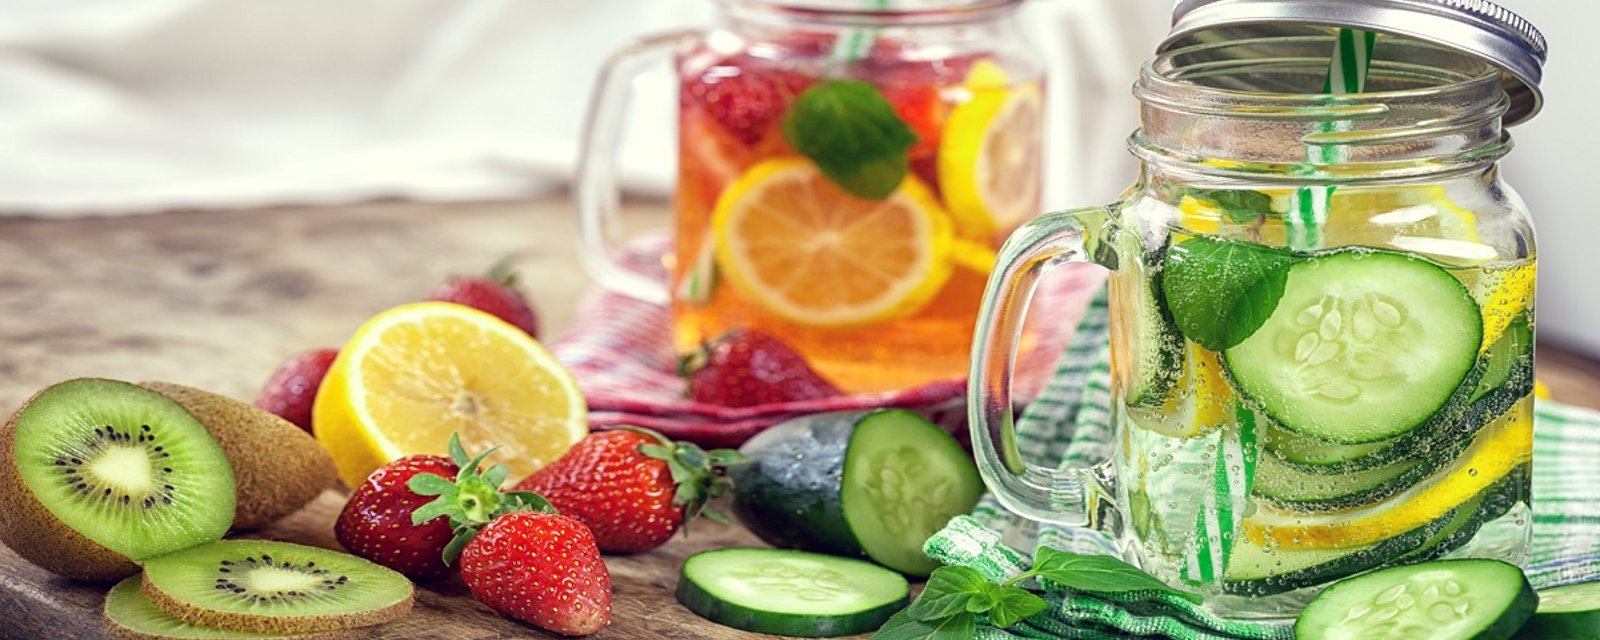 Les meilleures recettes d'eau naturellement aromatisée au goût de fruits